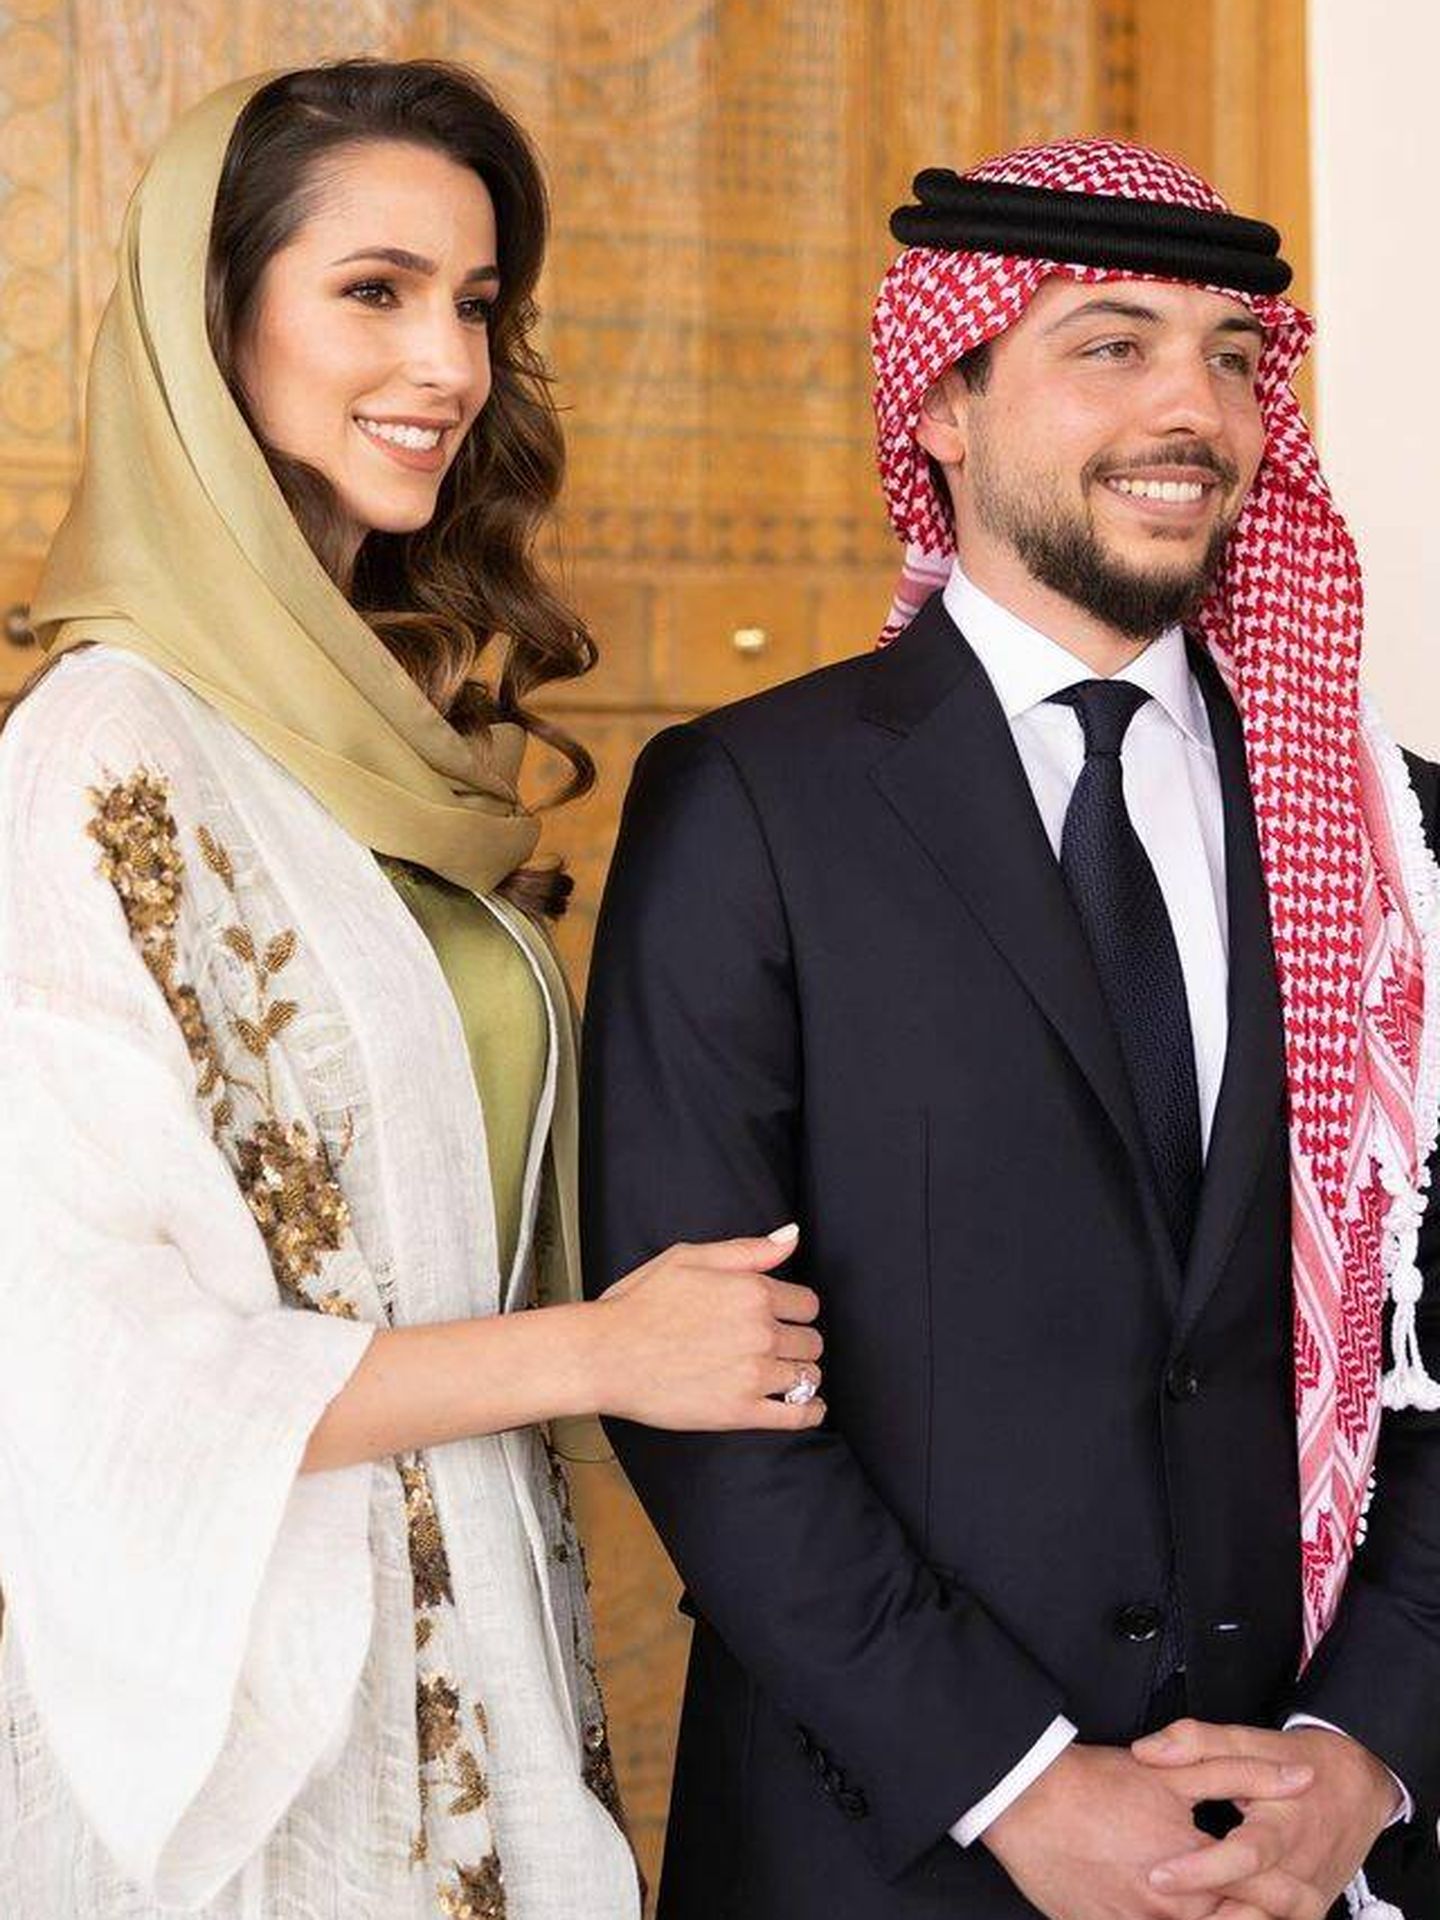 Hussein y su futura esposa, en una imagen oficial. (RR.SS.)